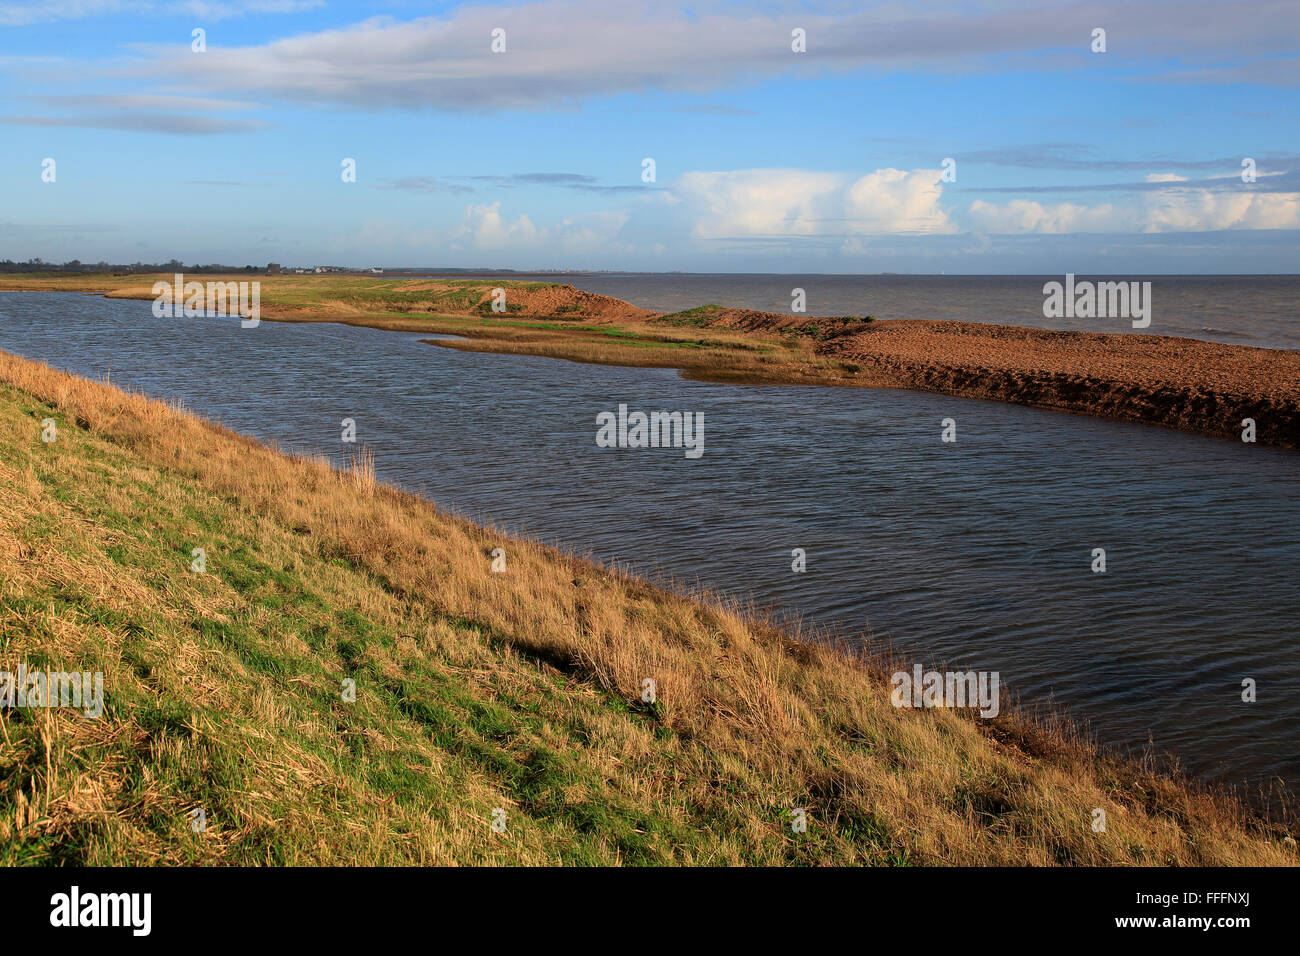 Rápida erosión de la bahía pedregosa landform bar sobre la costa del Mar del Norte, Hollesley Bay, Bawdsey, Suffolk, Inglaterra, Reino Unido. Foto de stock